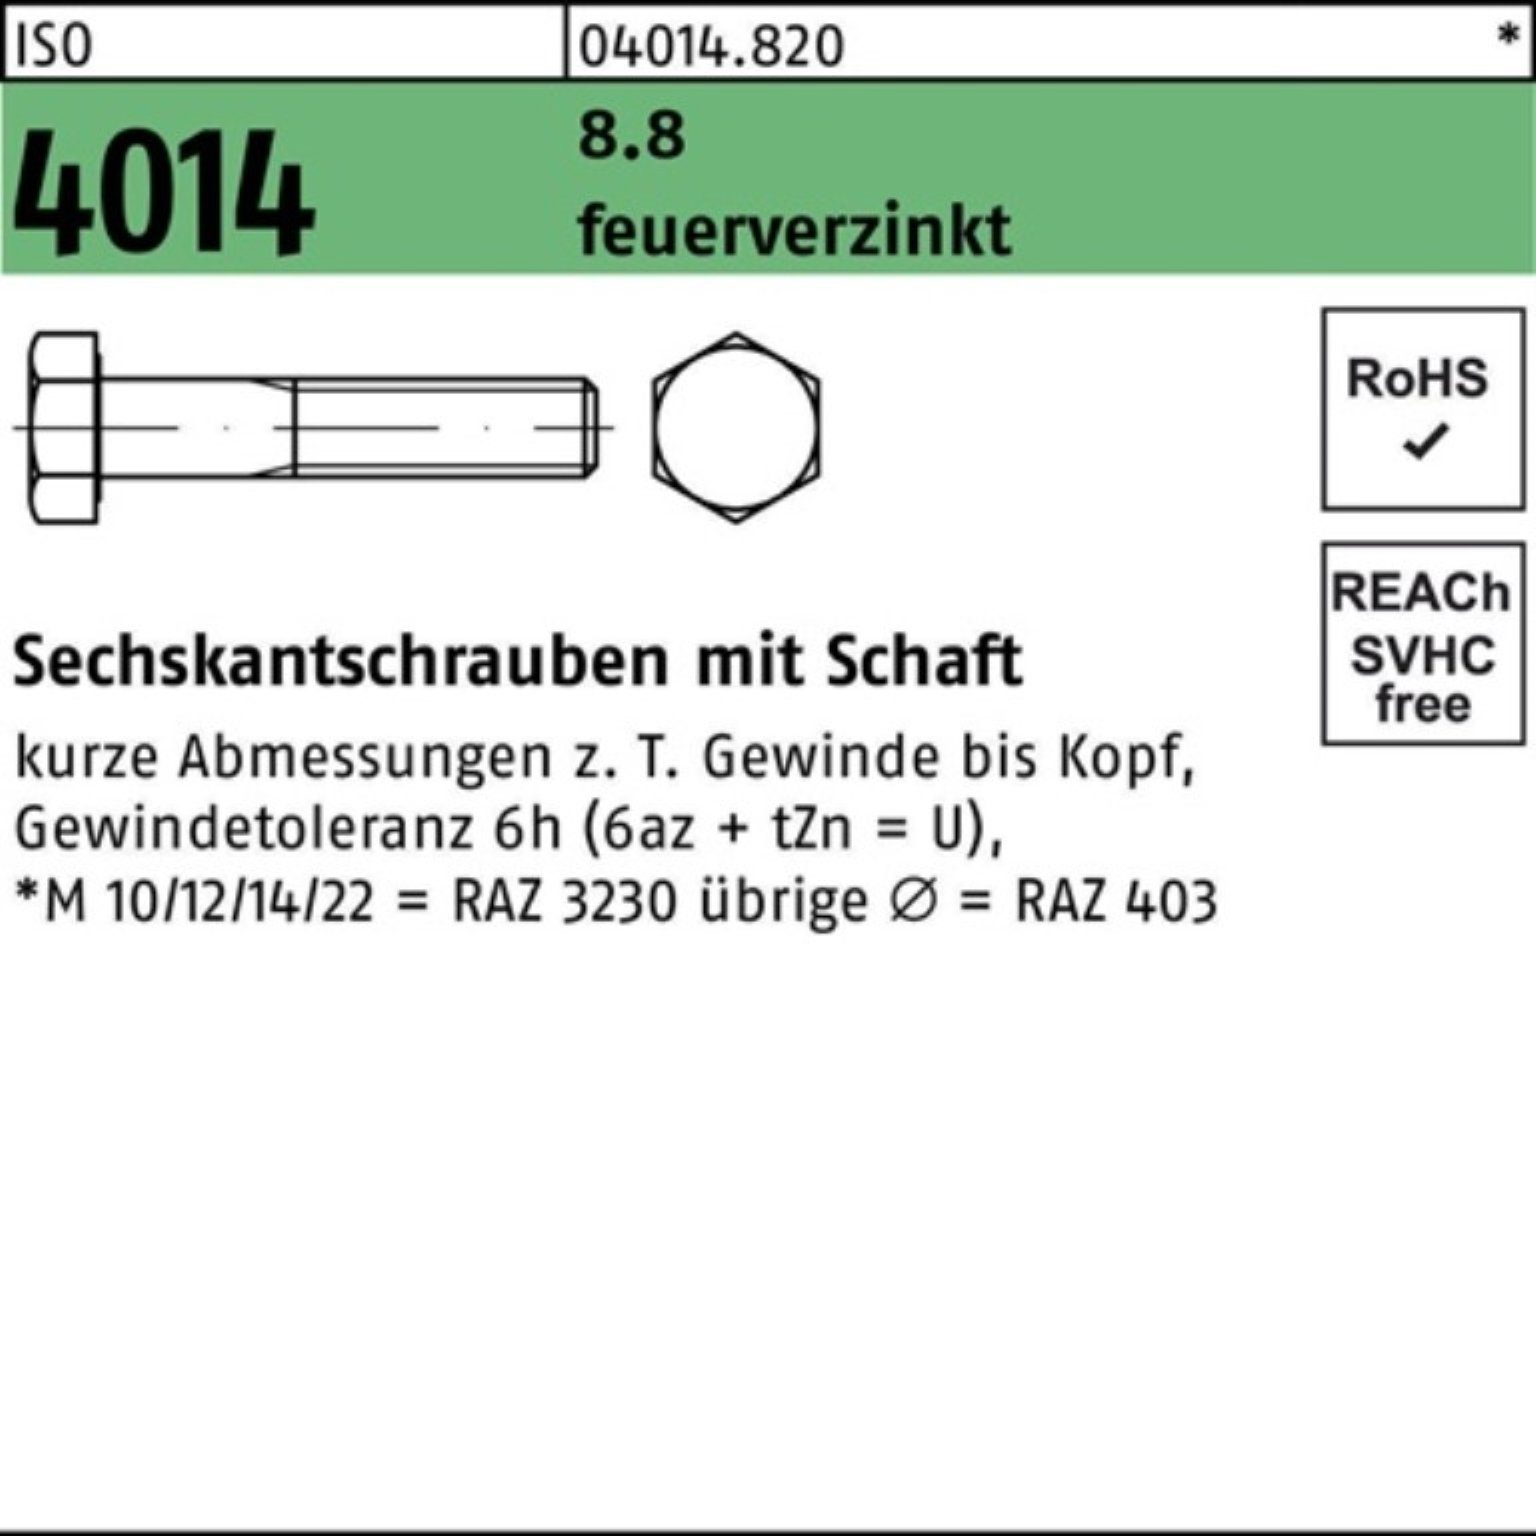 Bufab Sechskantschraube 100er Pack Sechskantschraube ISO 4014 Schaft M33x 140 8.8 feuerverz. 1